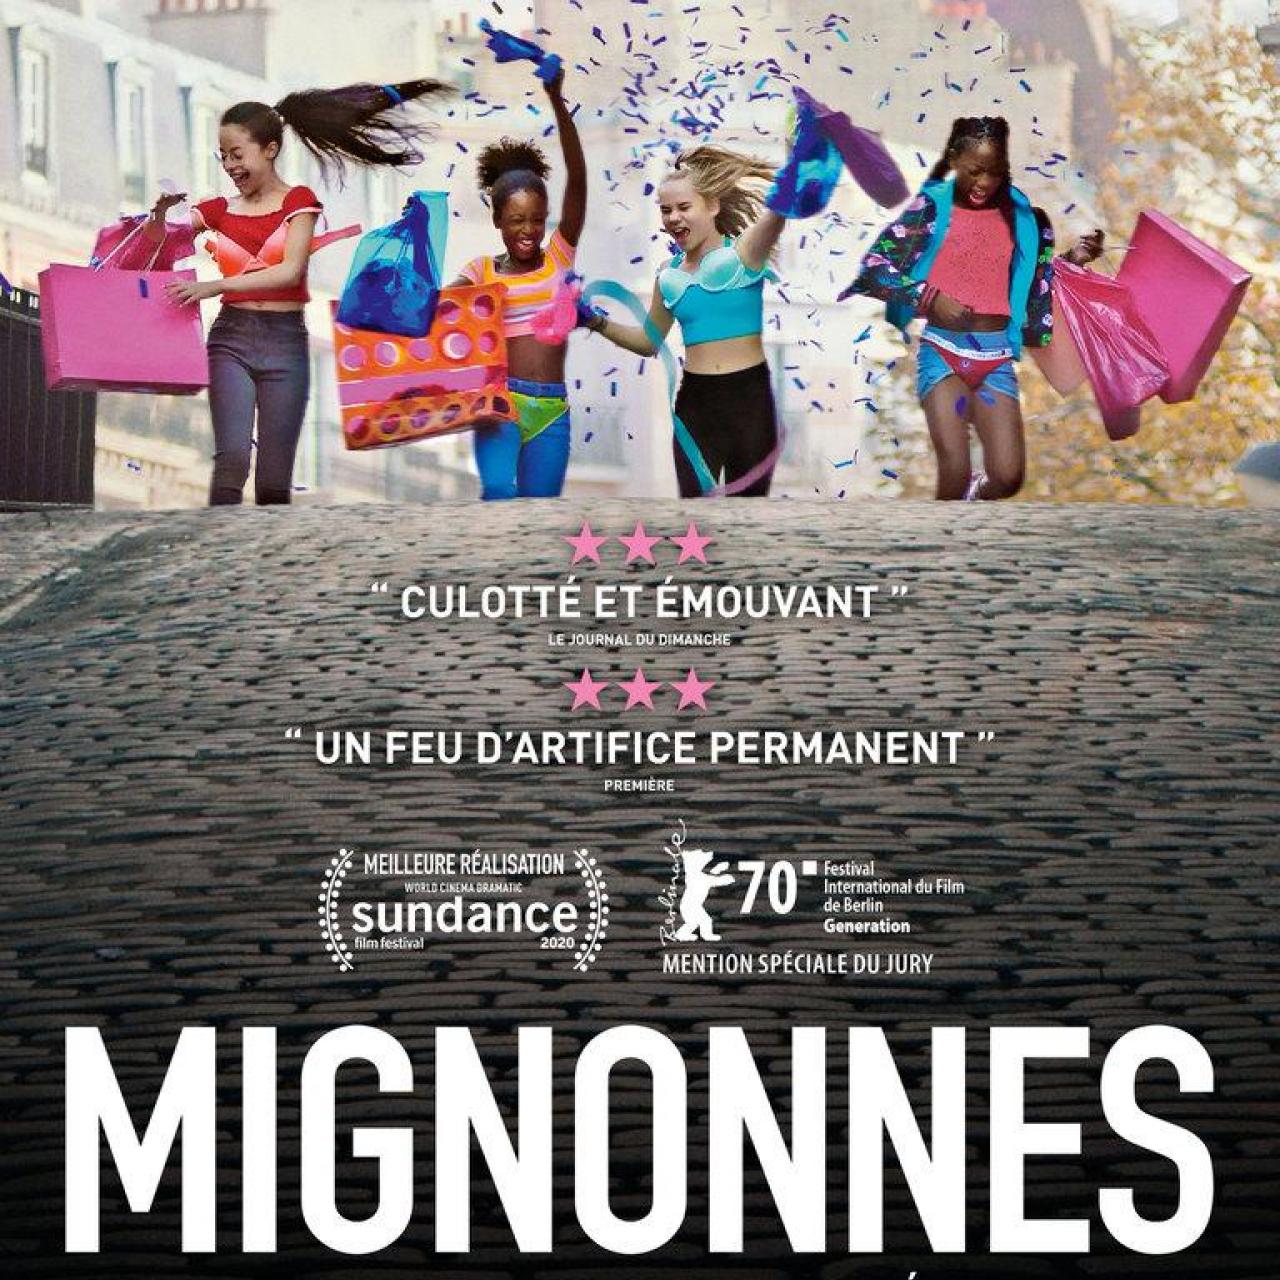 Affiche - Mignonnes